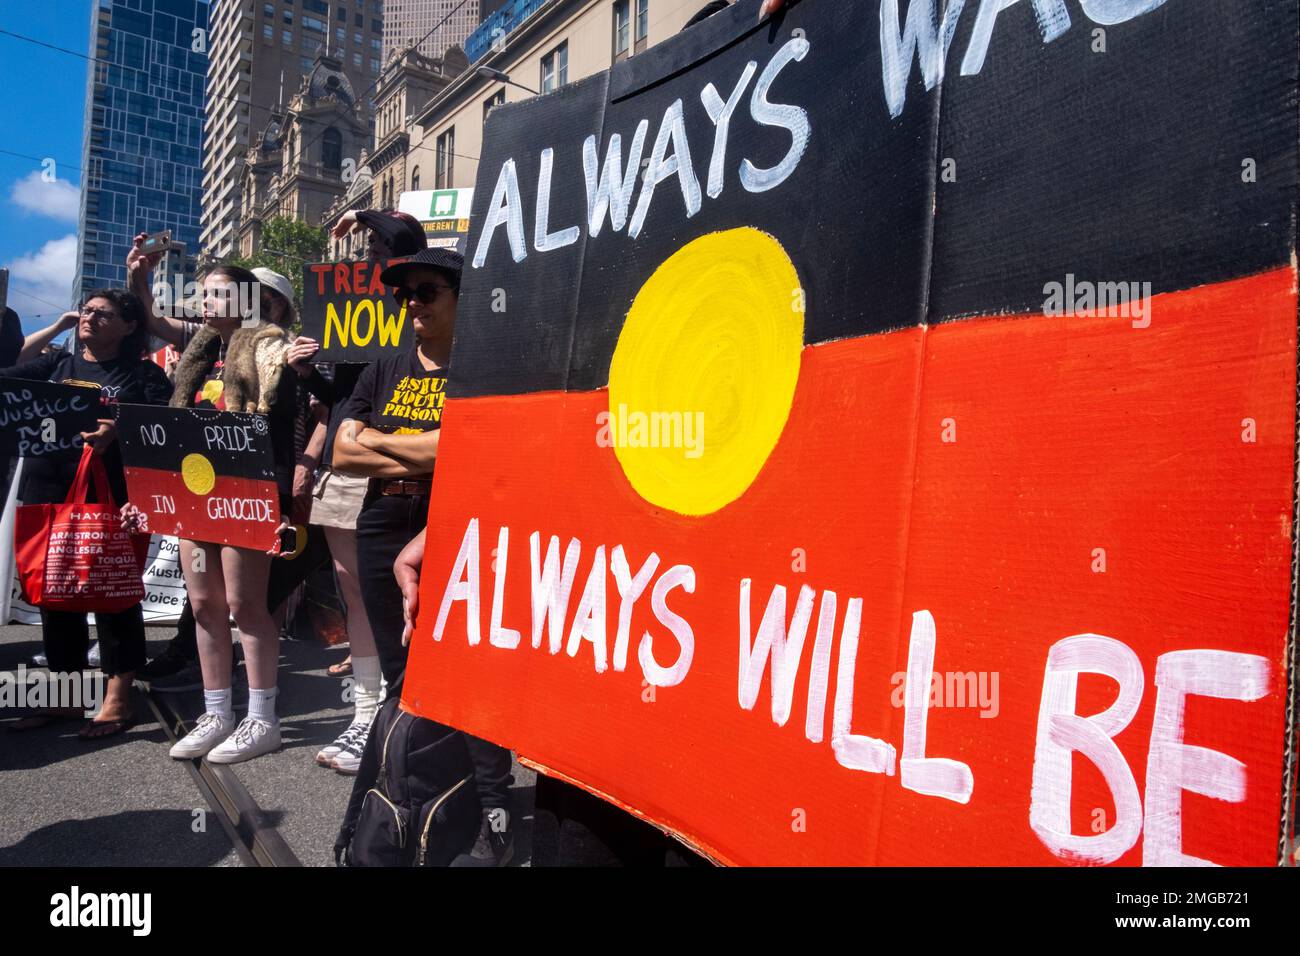 Les manifestants tiennent des pancartes lors du rassemblement du jour de l'invasion à Melbourne, Victoria, Australie. Banque D'Images